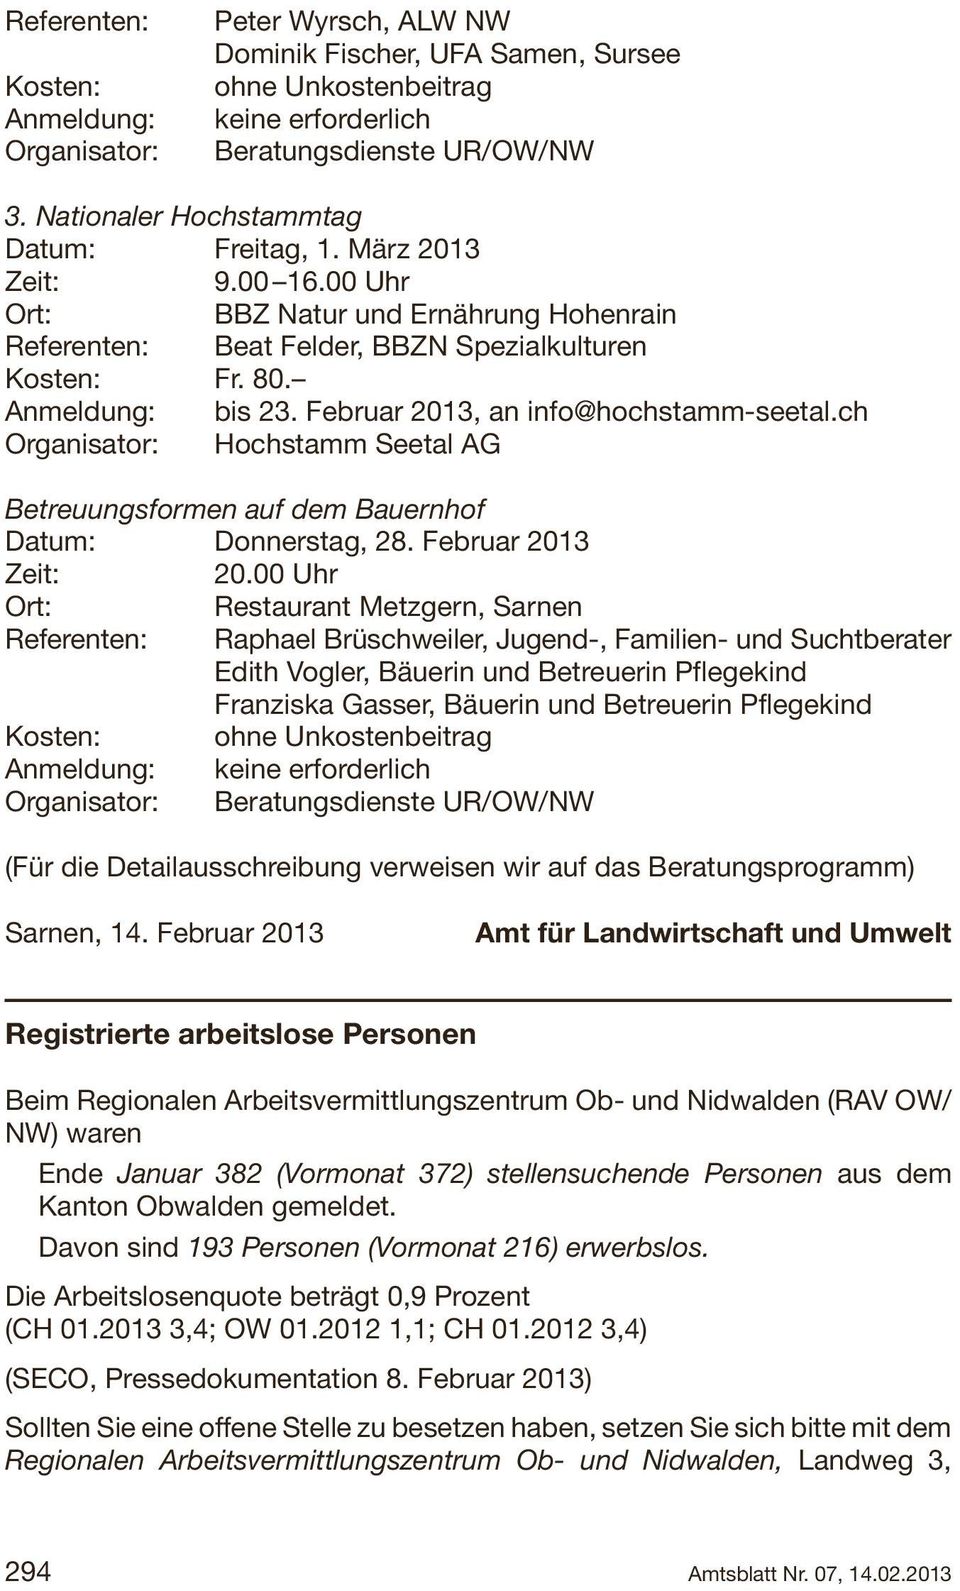 Februar 2013, an info@hochstamm-seetal.ch Organisator: Hochstamm Seetal AG Betreuungsformen auf dem Bauernhof Datum: Donnerstag, 28. Februar 2013 Zeit: 20.